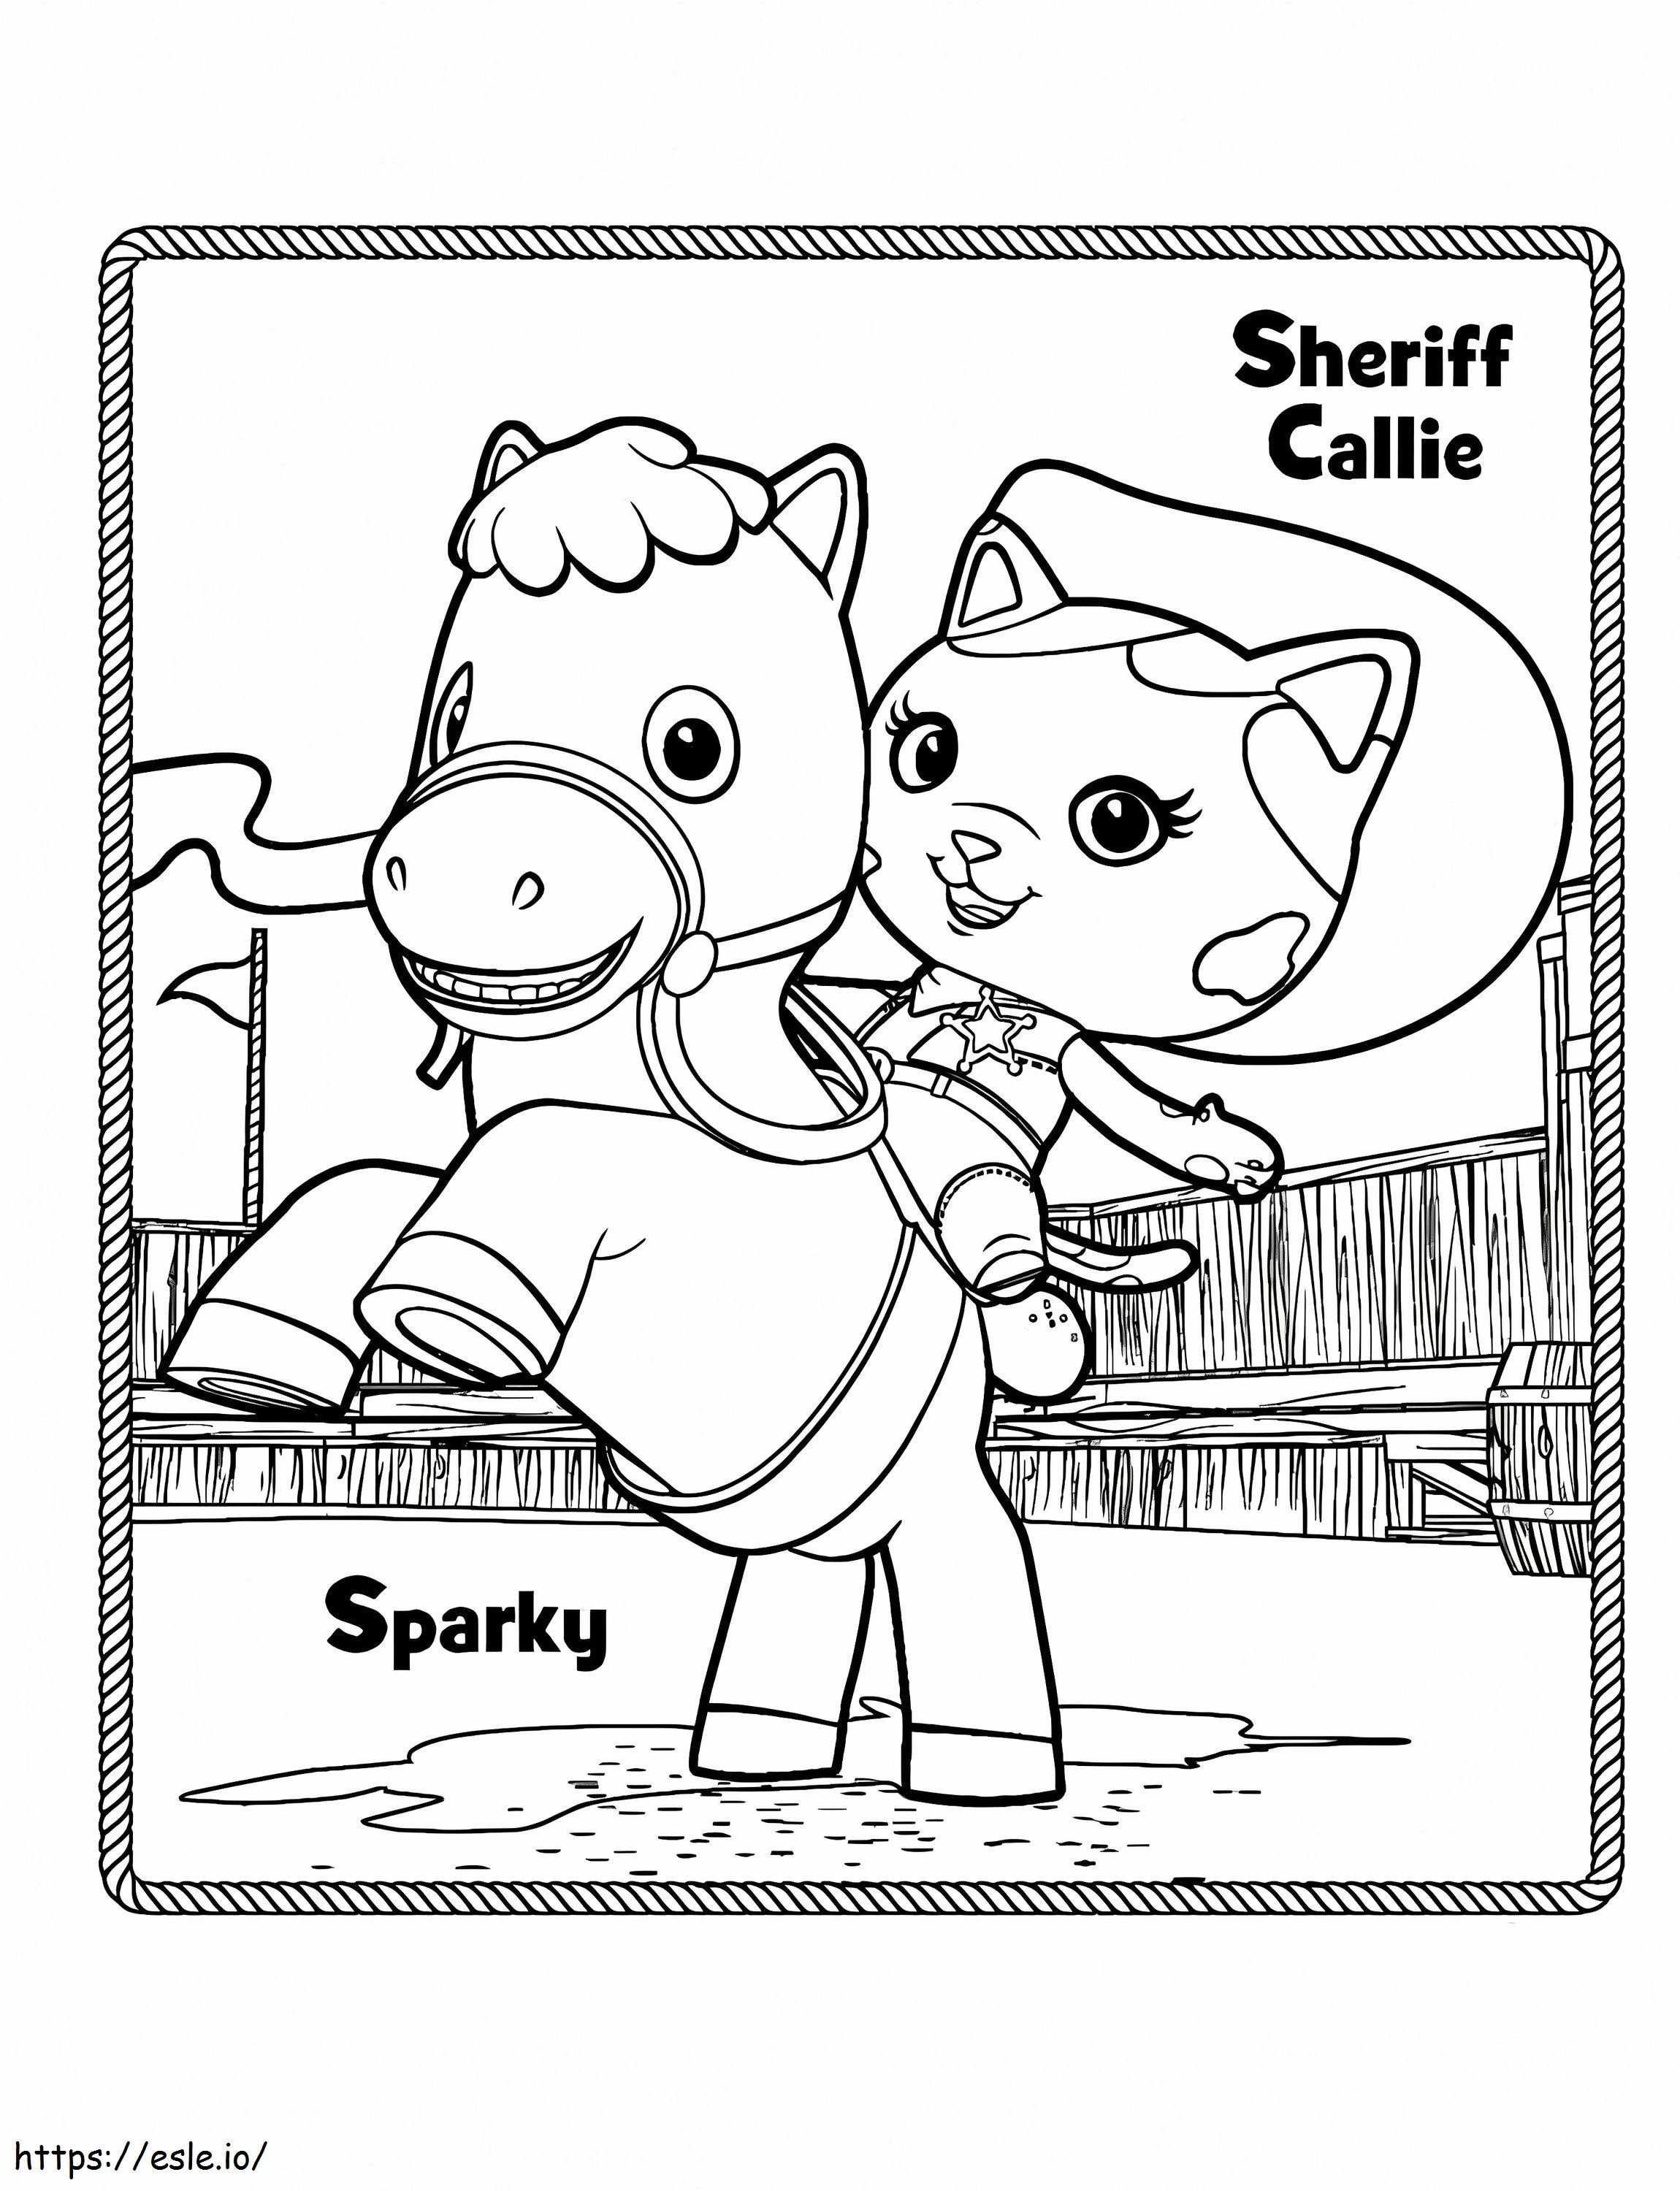 Sparky en sheriff Callie kleurplaat kleurplaat